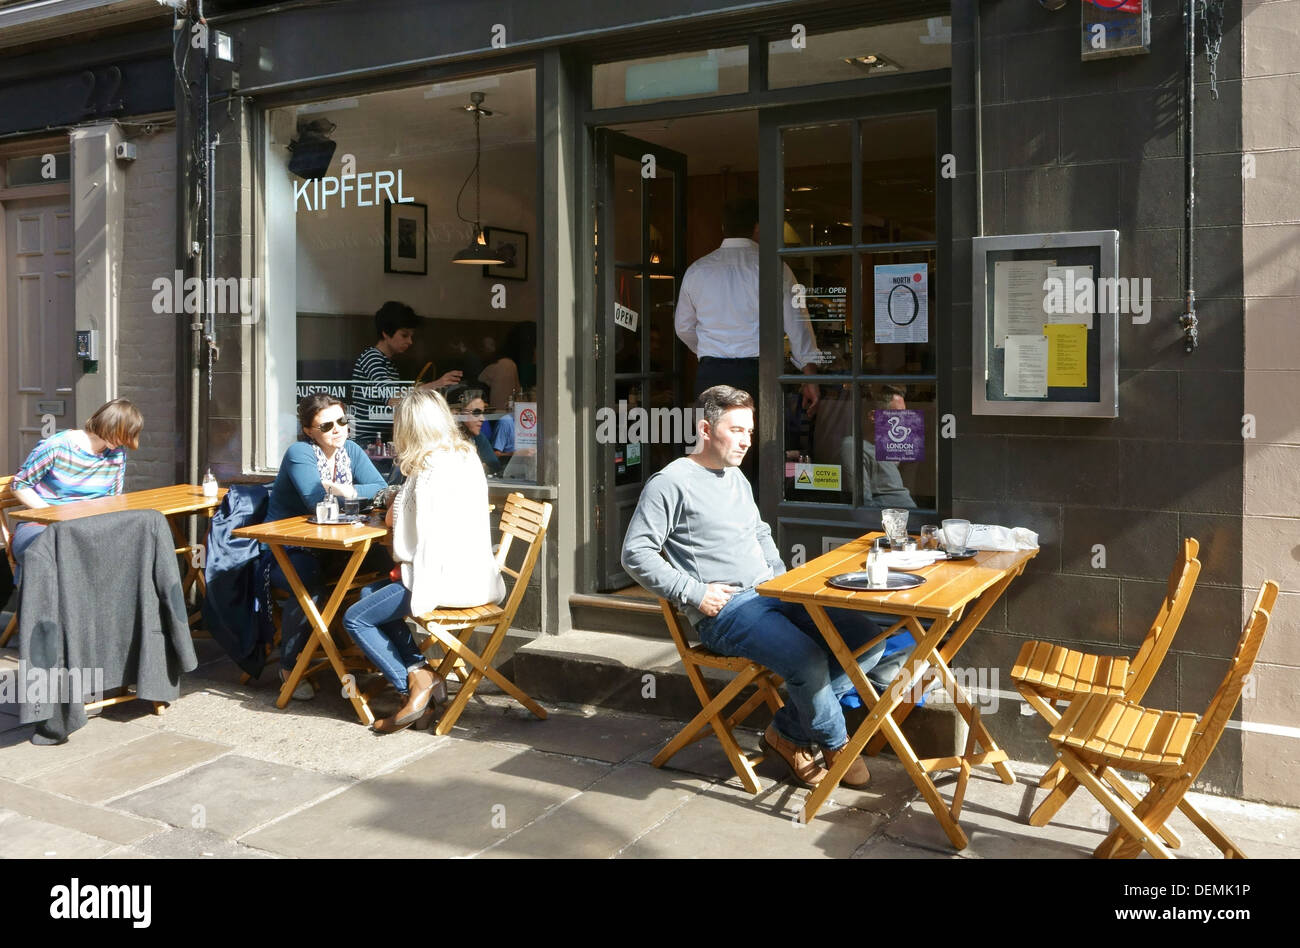 Kipferl café viennois et restaurant, Islington, Londres Banque D'Images